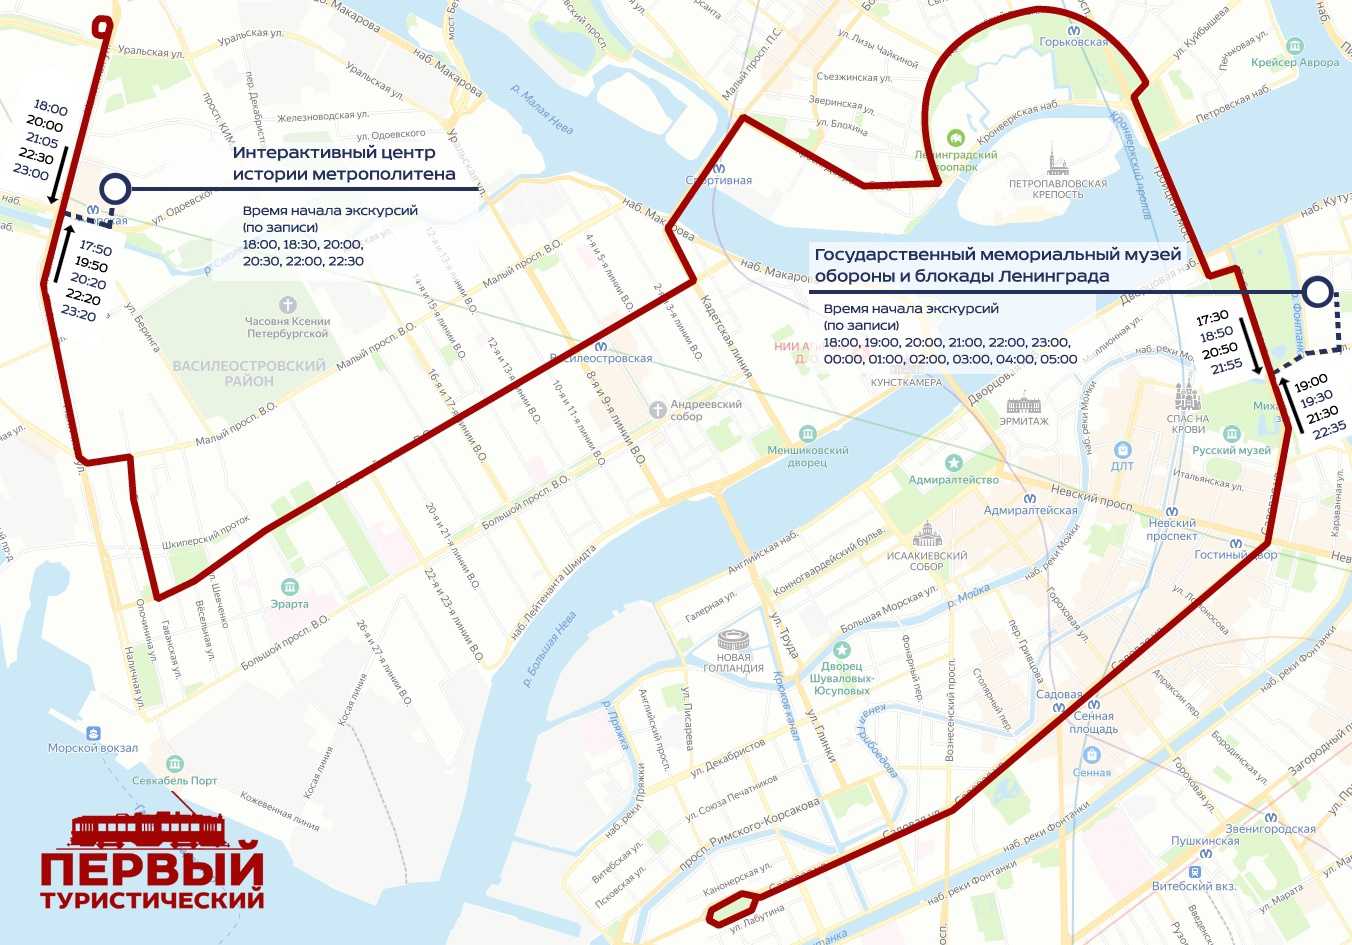 Туристический трамвай Петербурга в «Ночь музеев» станет экскурсионным шаттлом